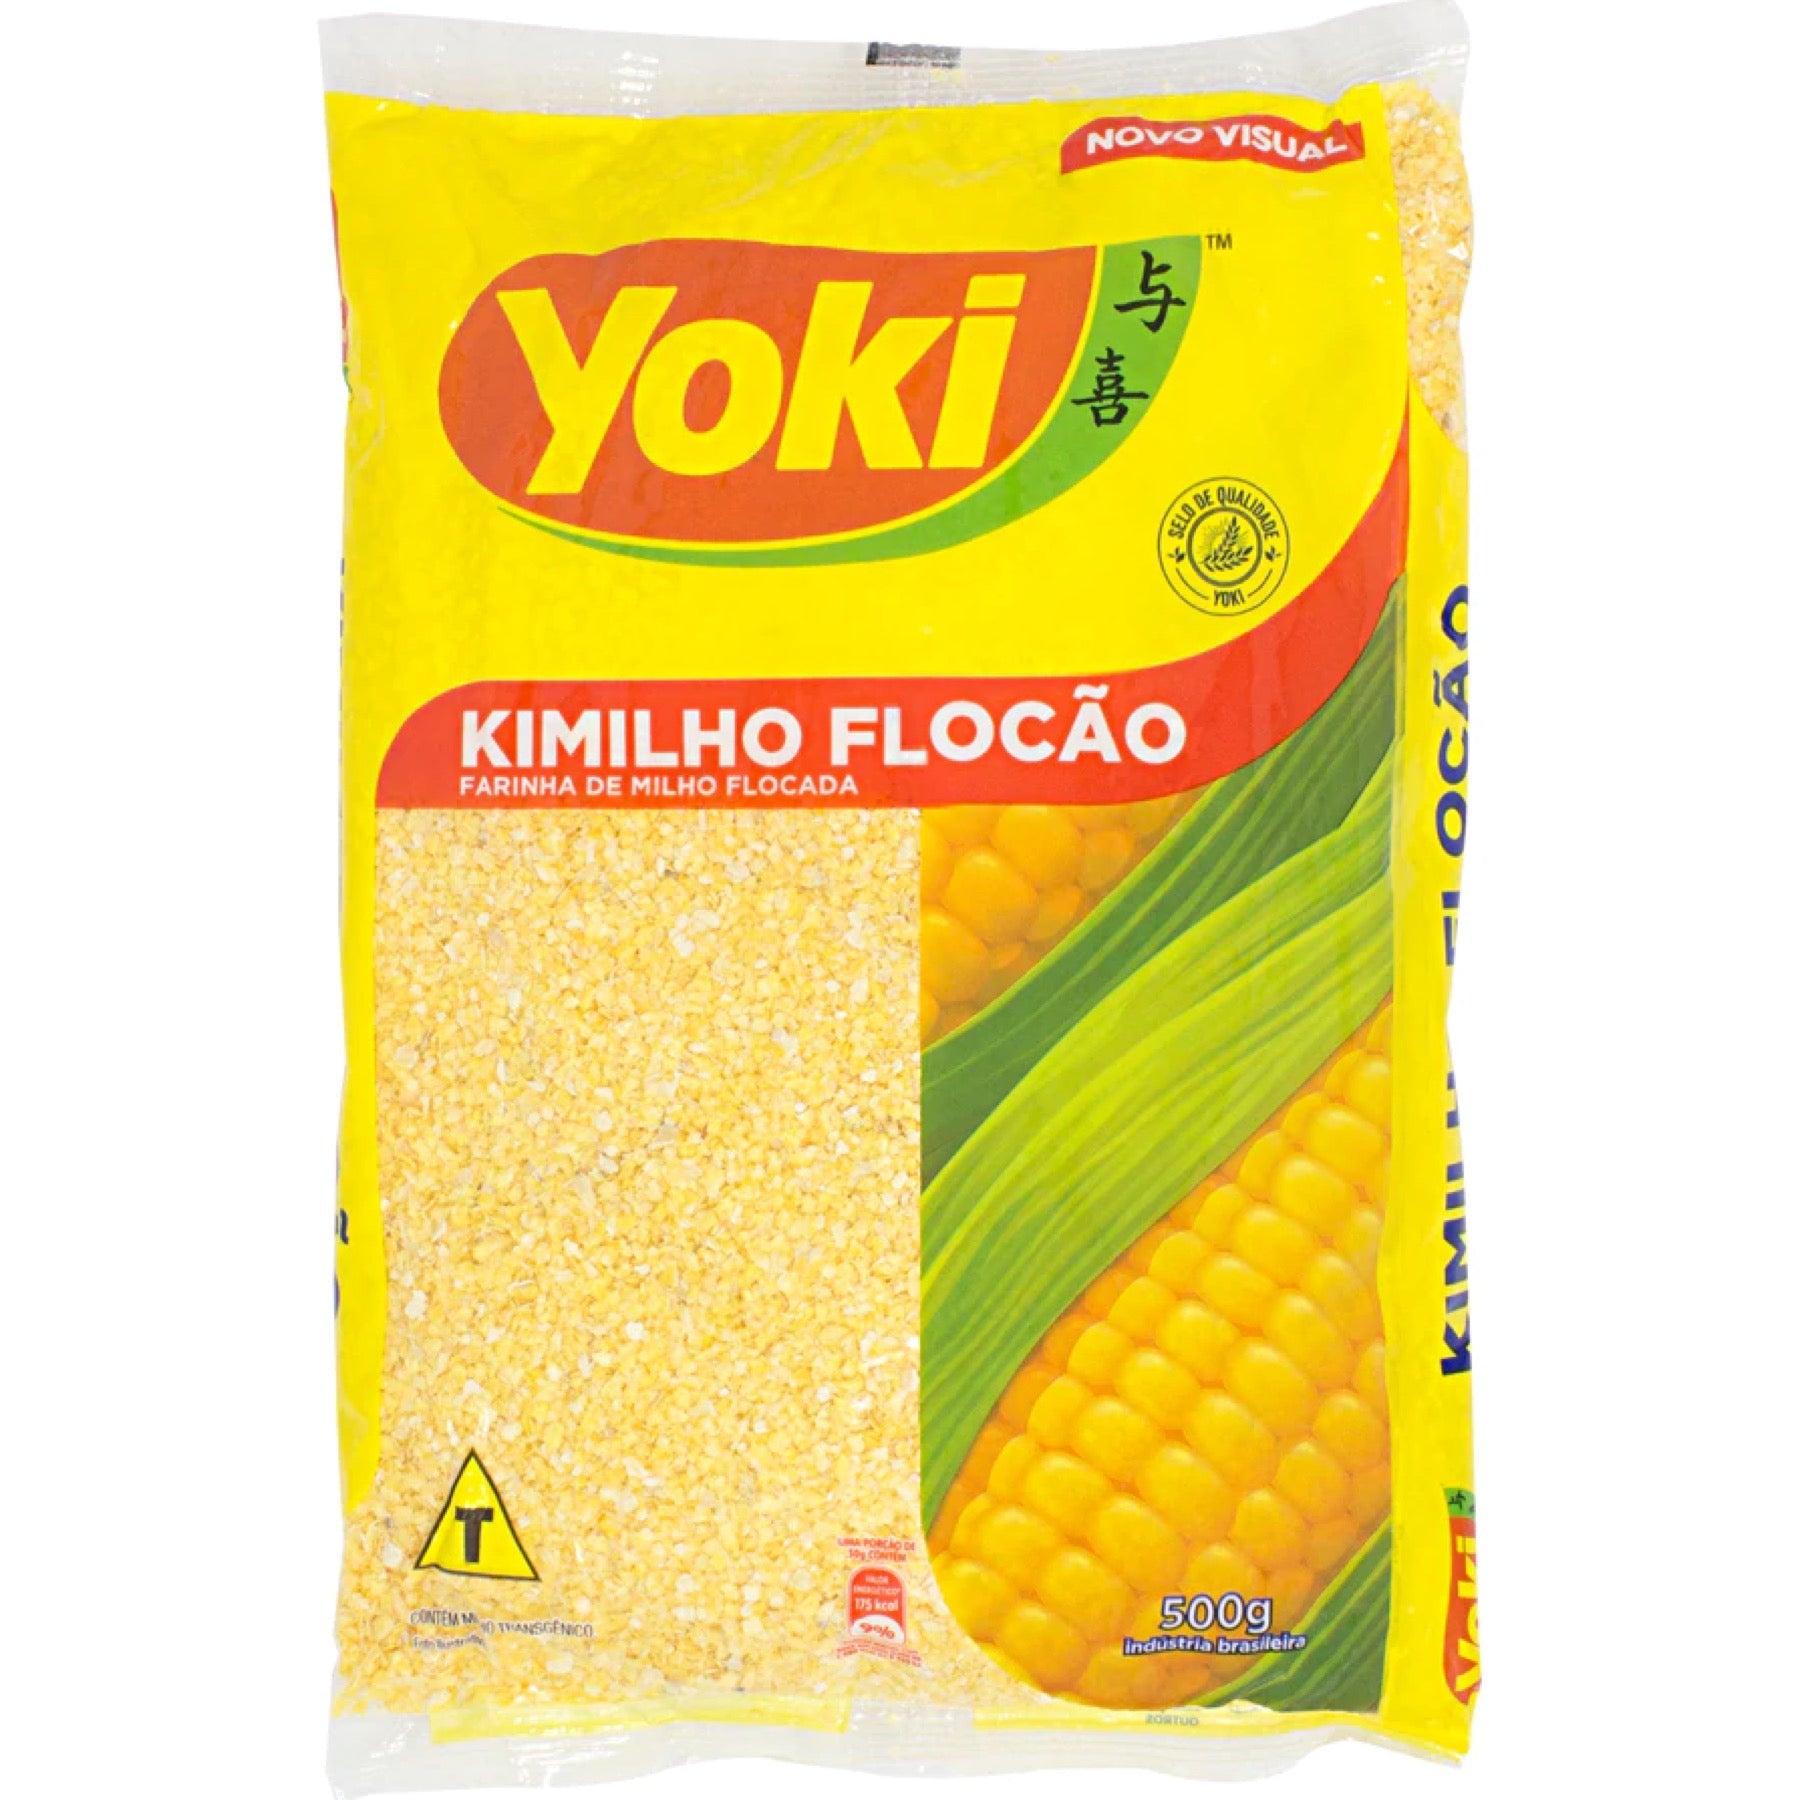  Yoki - Seasoned Cassava Flour - 17.6 Oz - Farofa De